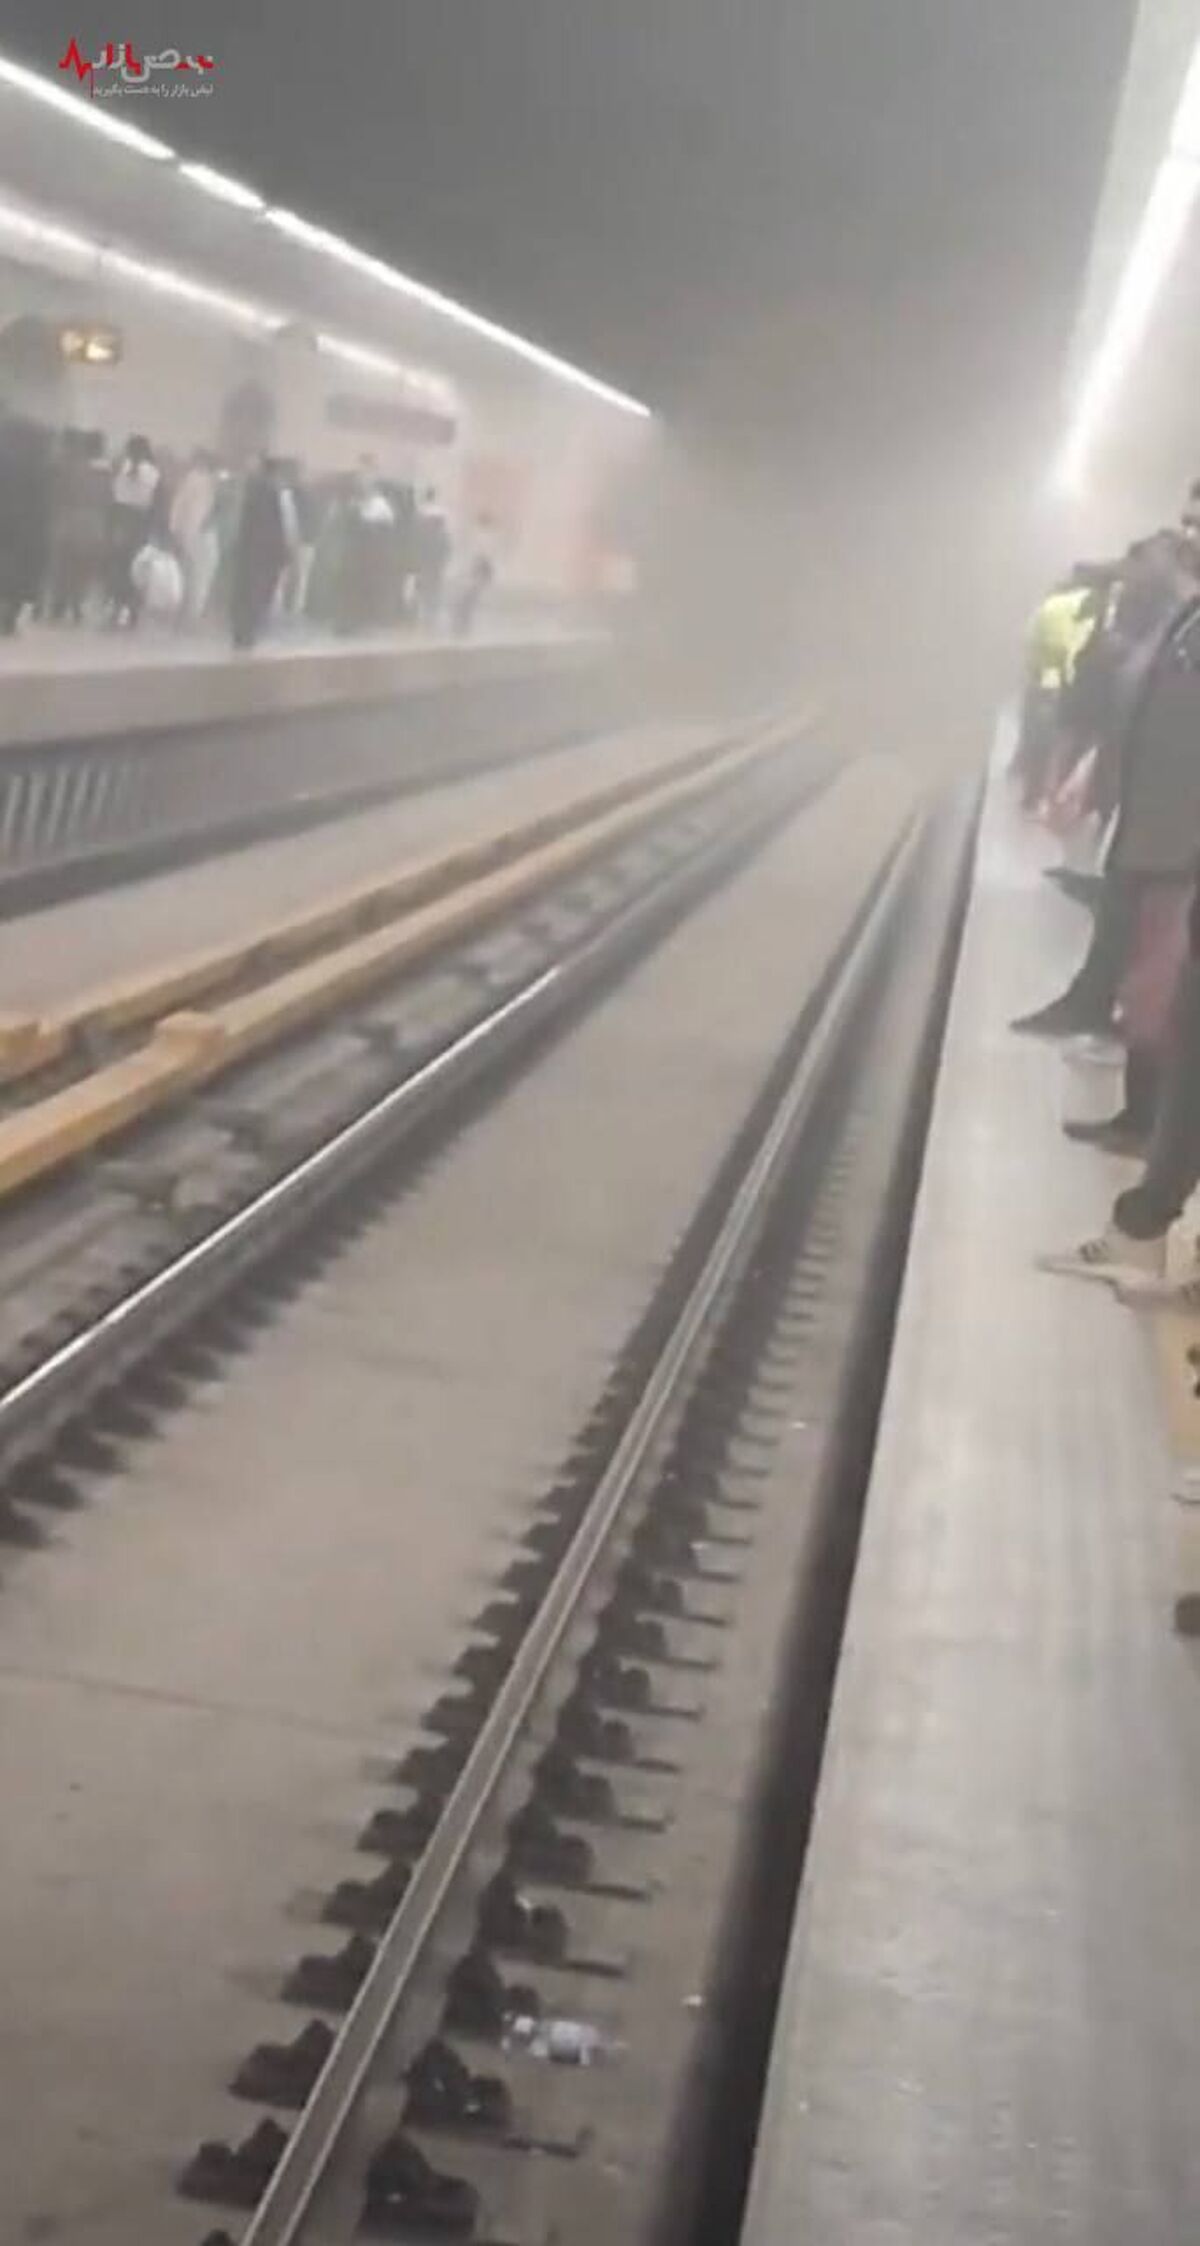 مسمومیت سریالی در مترو / مسافران مترو بوی گاز احساس کردند